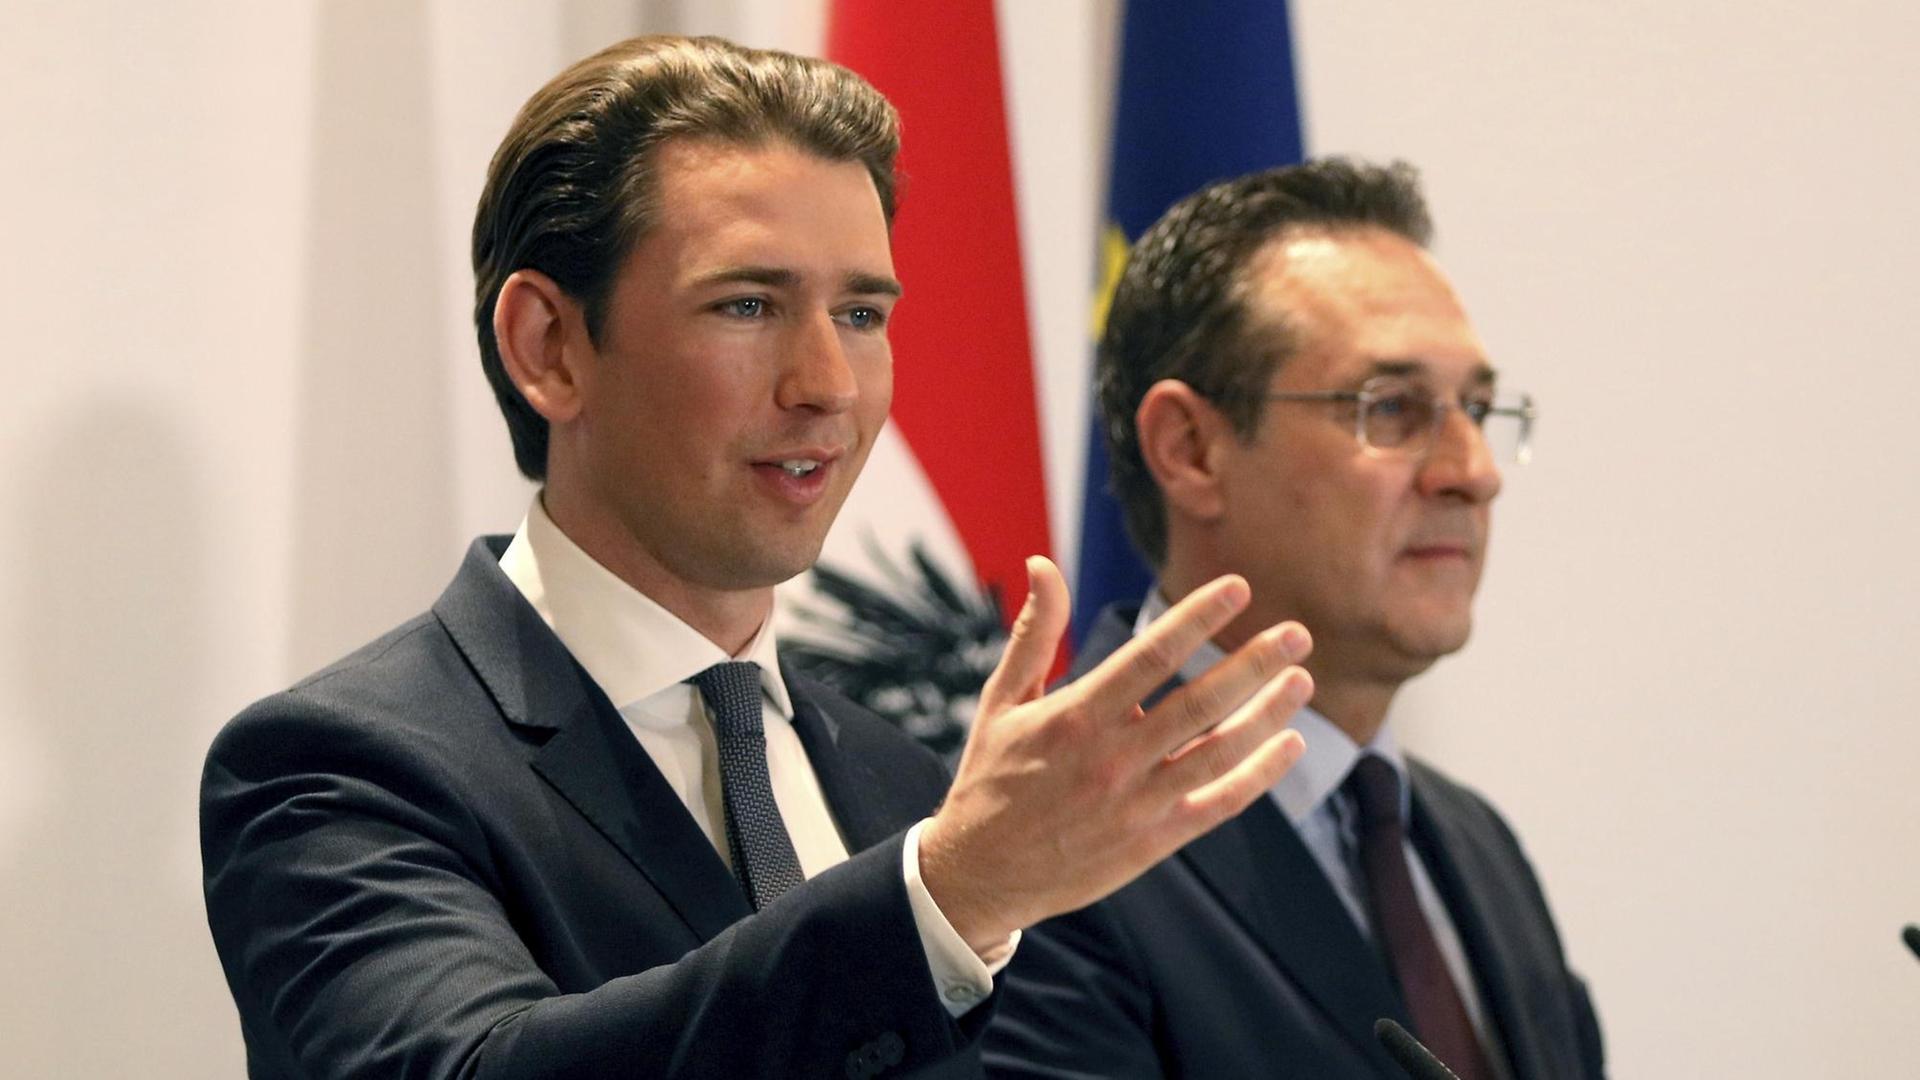 Österreichs Kanzler Sebastian Kurz (l.) steht neben Heinz-Christian Strache